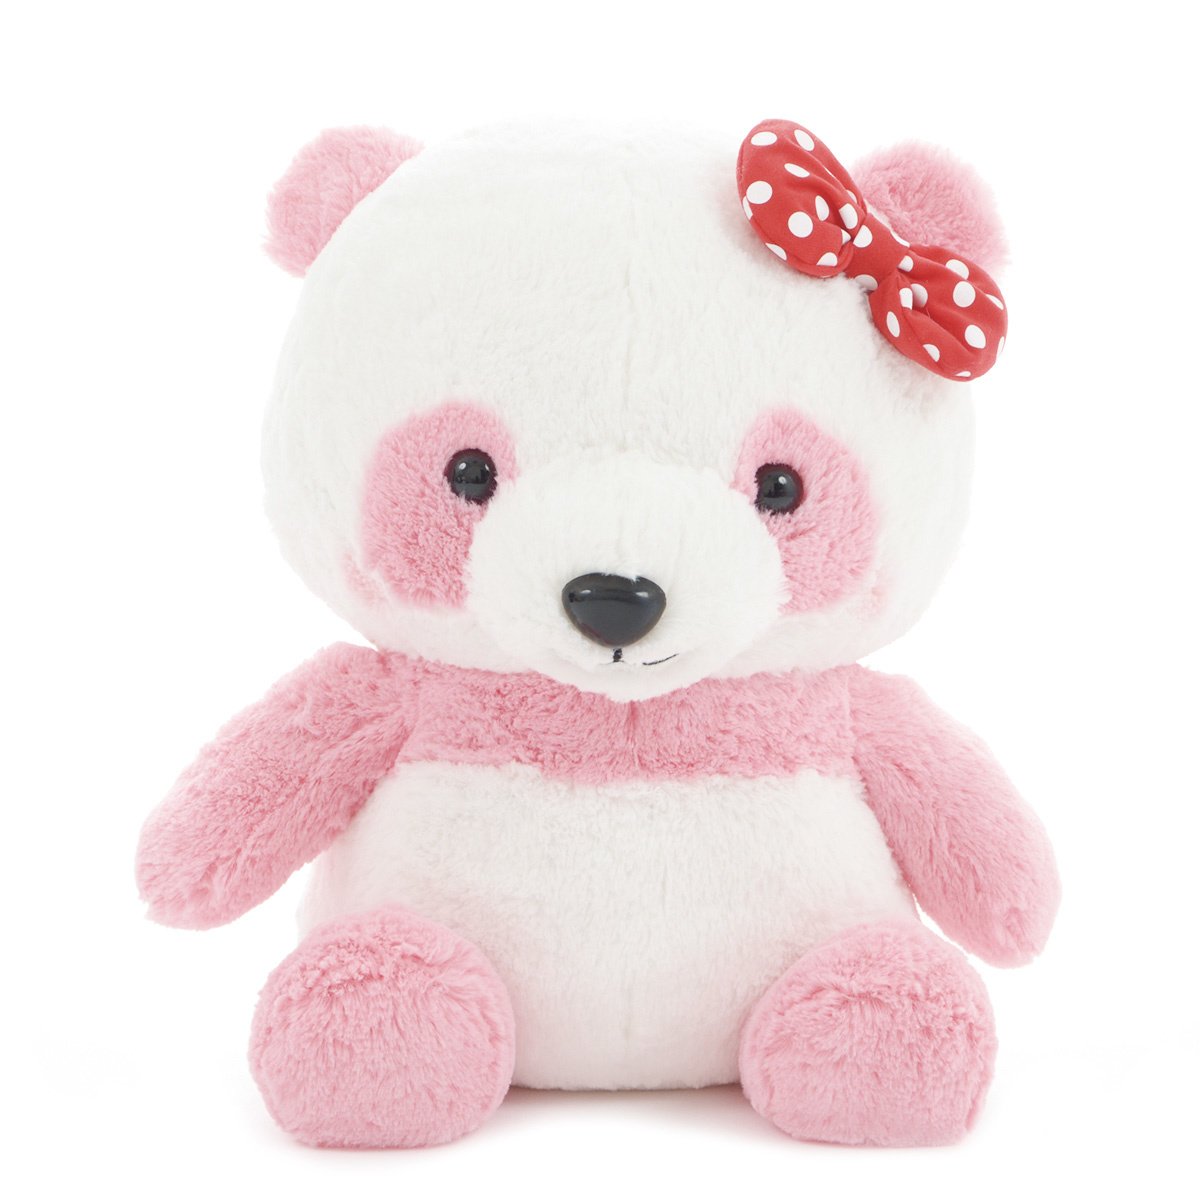 Plush Panda, Amuse, Honwaka Panda Baby, Strawberry Milk, Pink / White, 15 Inches